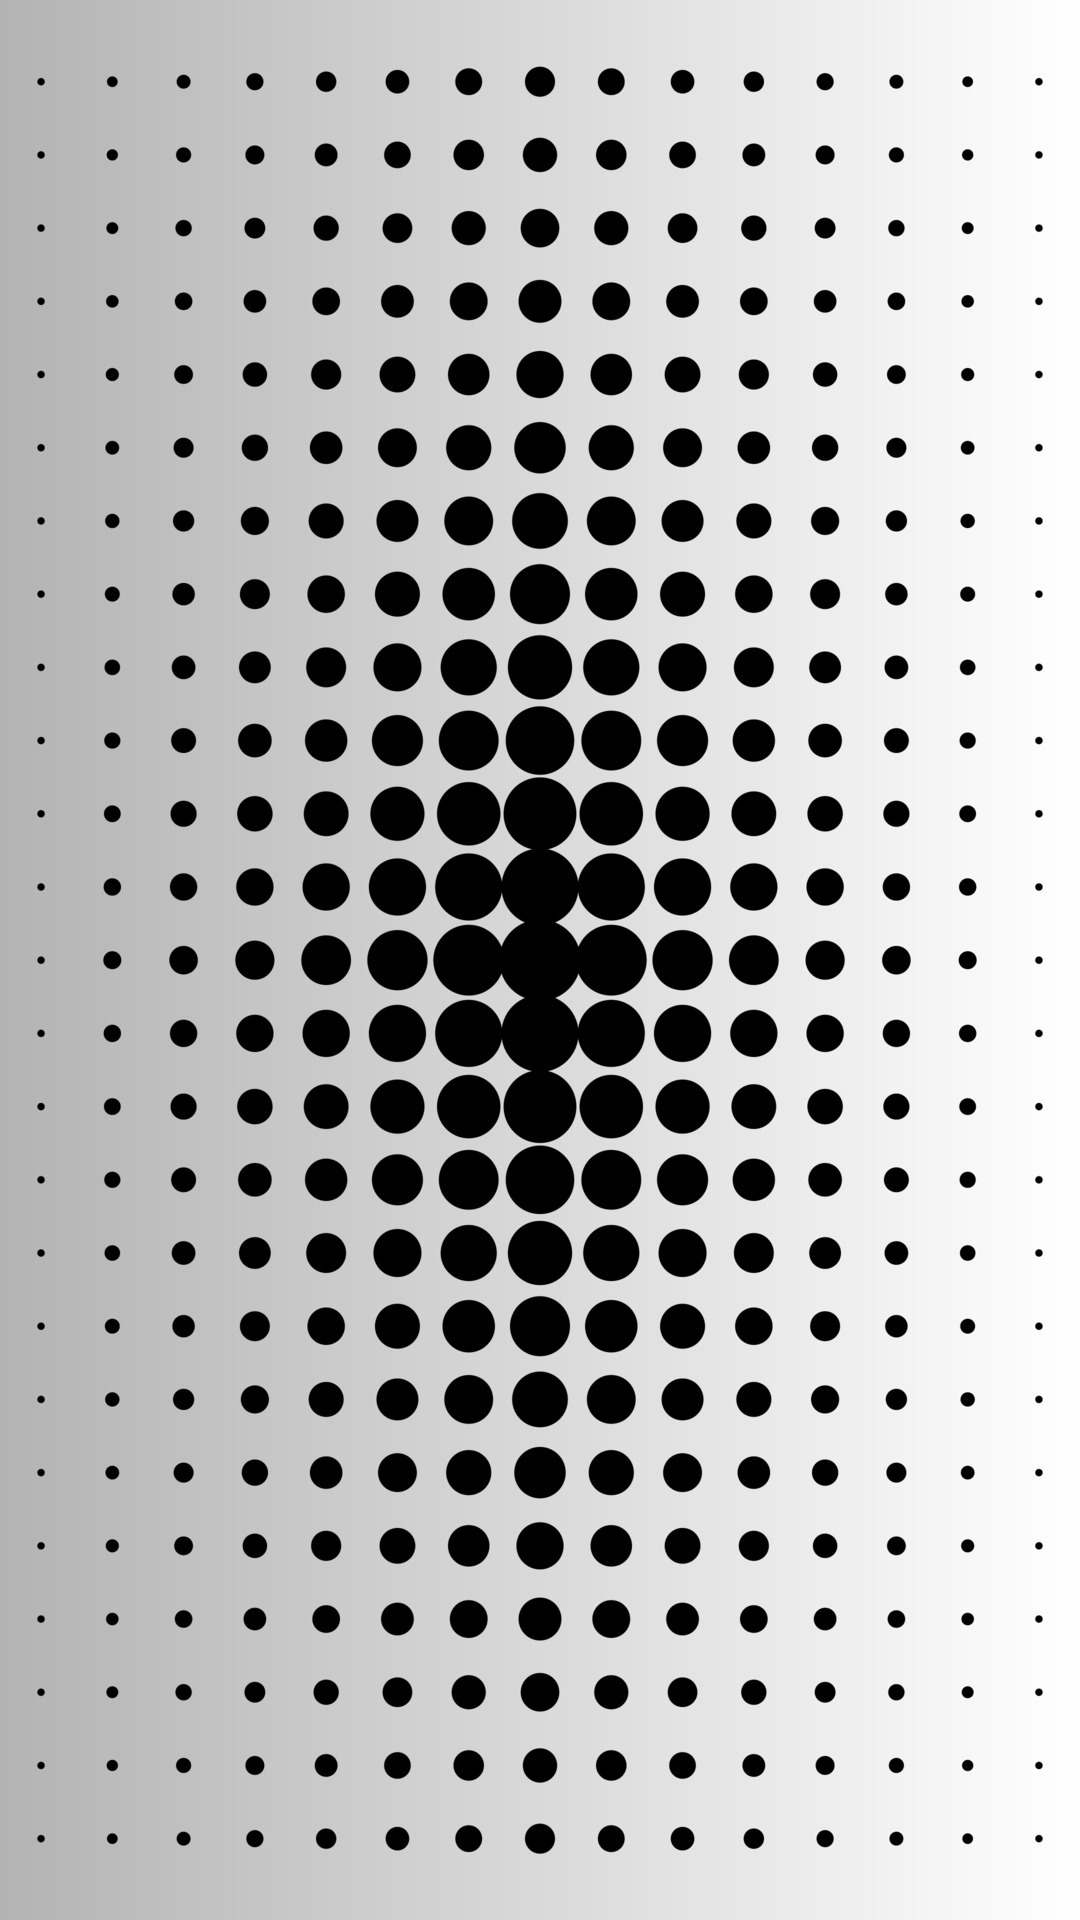 Kiểu Black dots on grey gradient pattern đang rất thịnh hành trong thời đại này. Nếu bạn thích kiểu trang trí trang nhã và sang trọng, xem ngay hình liên quan để thấy rằng kiểu này phù hợp với mọi màn hình và độ phân giải.